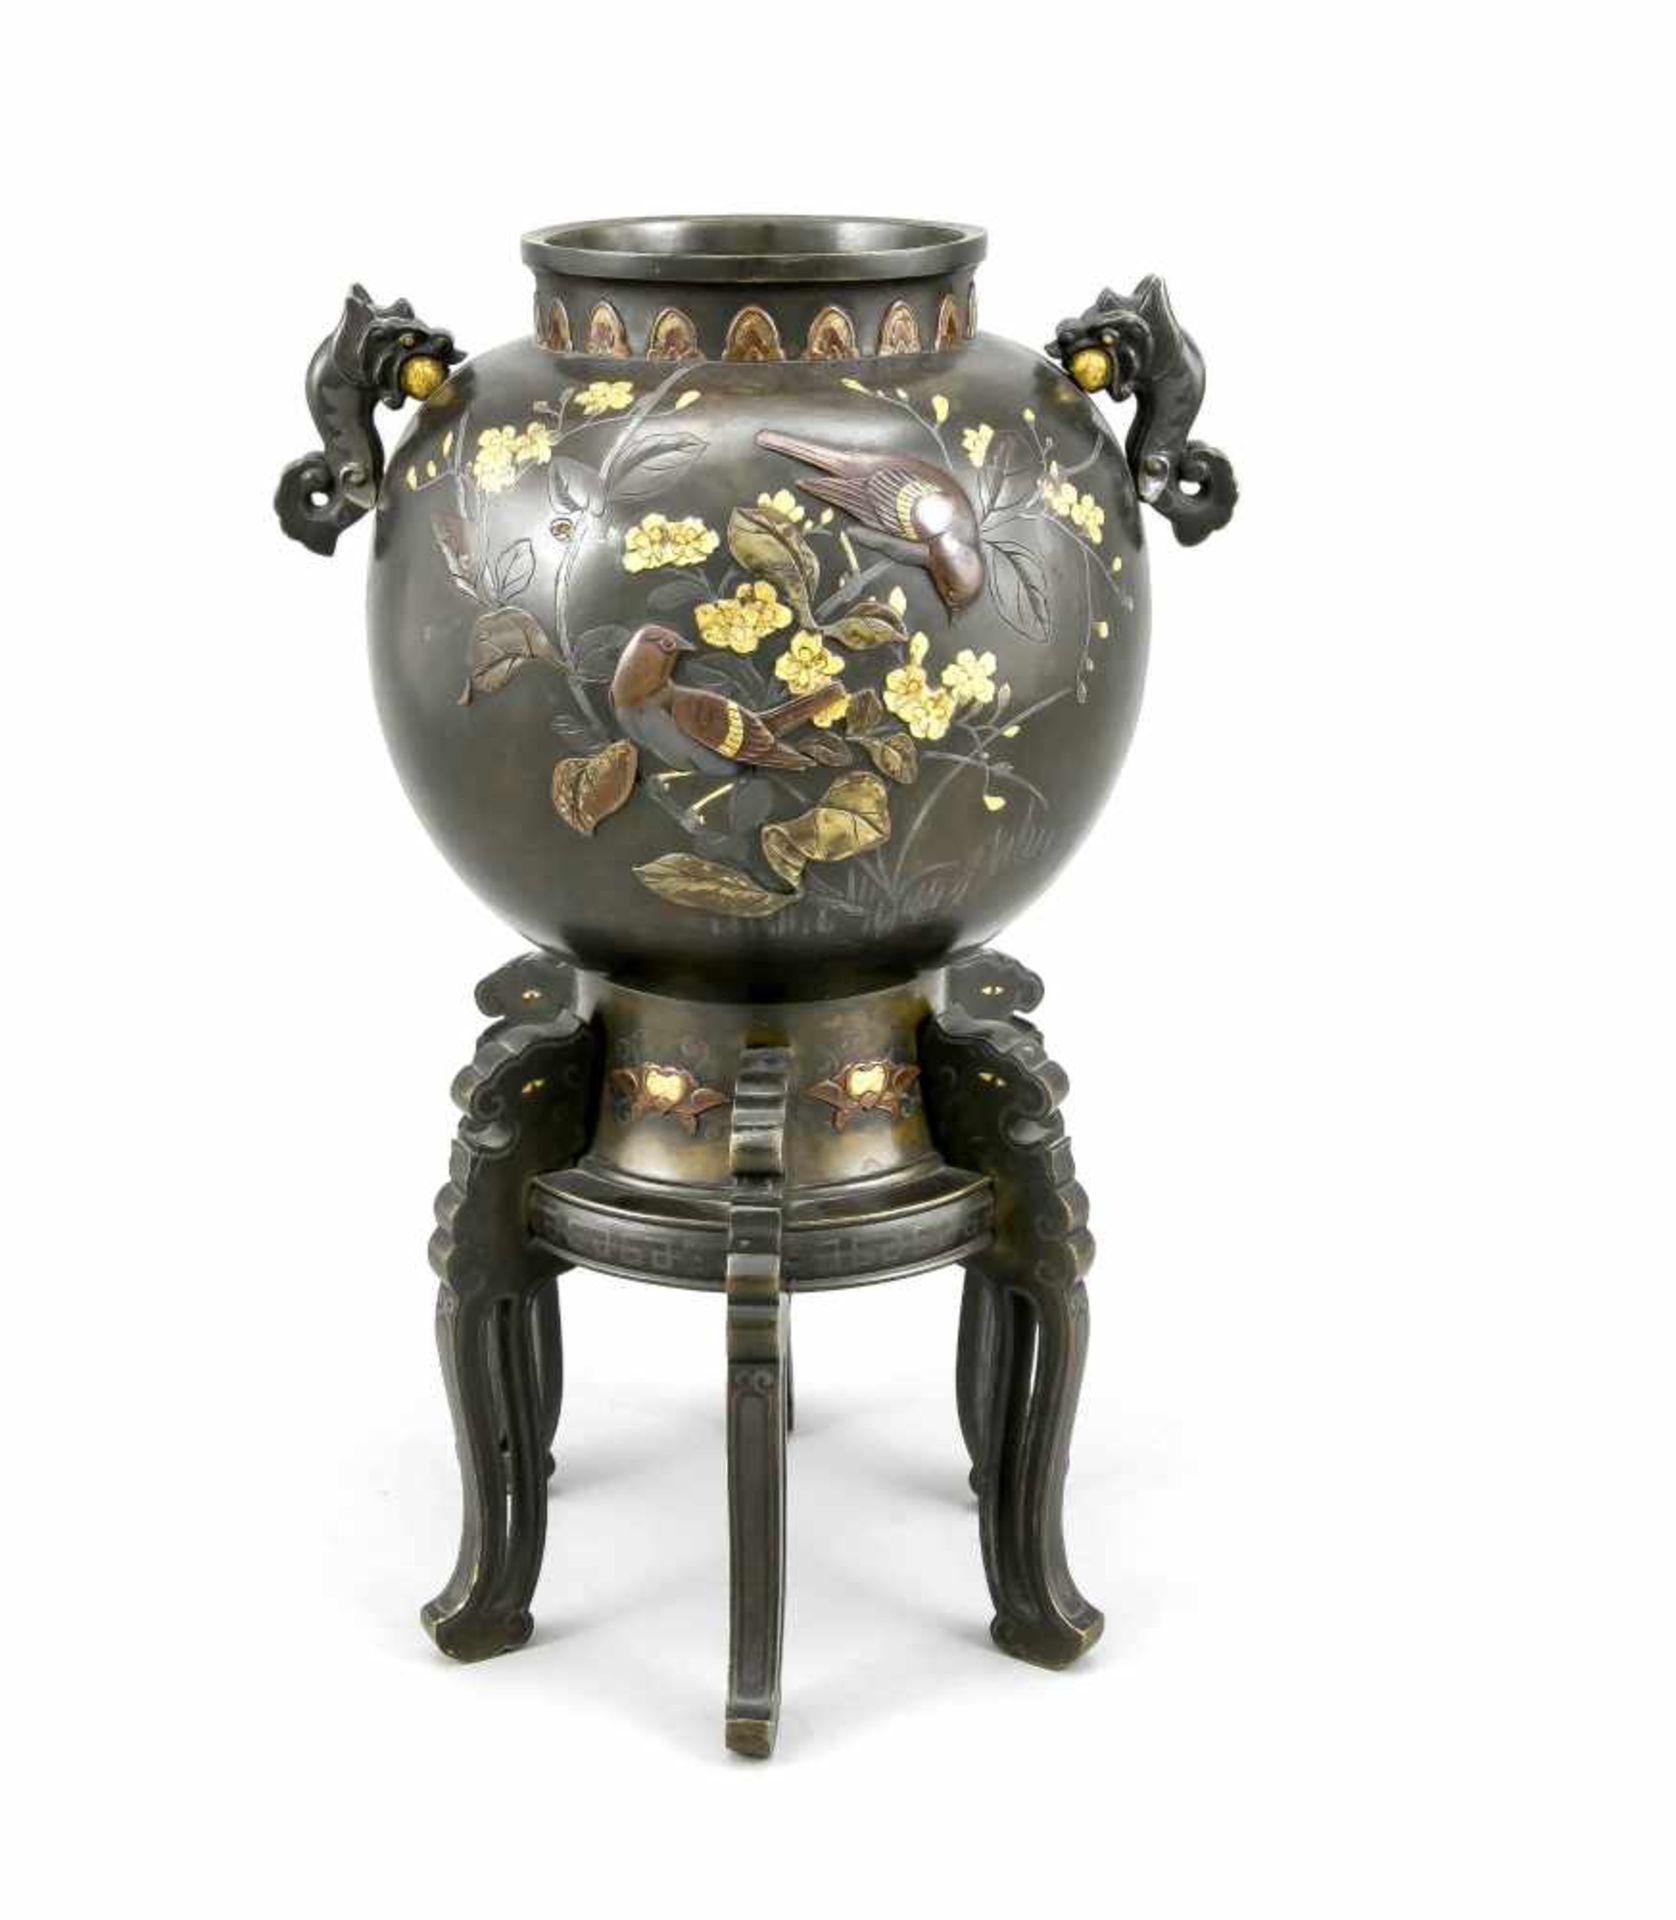 Vase, Japan, um 1900, dunkel patinierte Bronze und Goldtauschierung. Kugelig-geschulterteForm auf